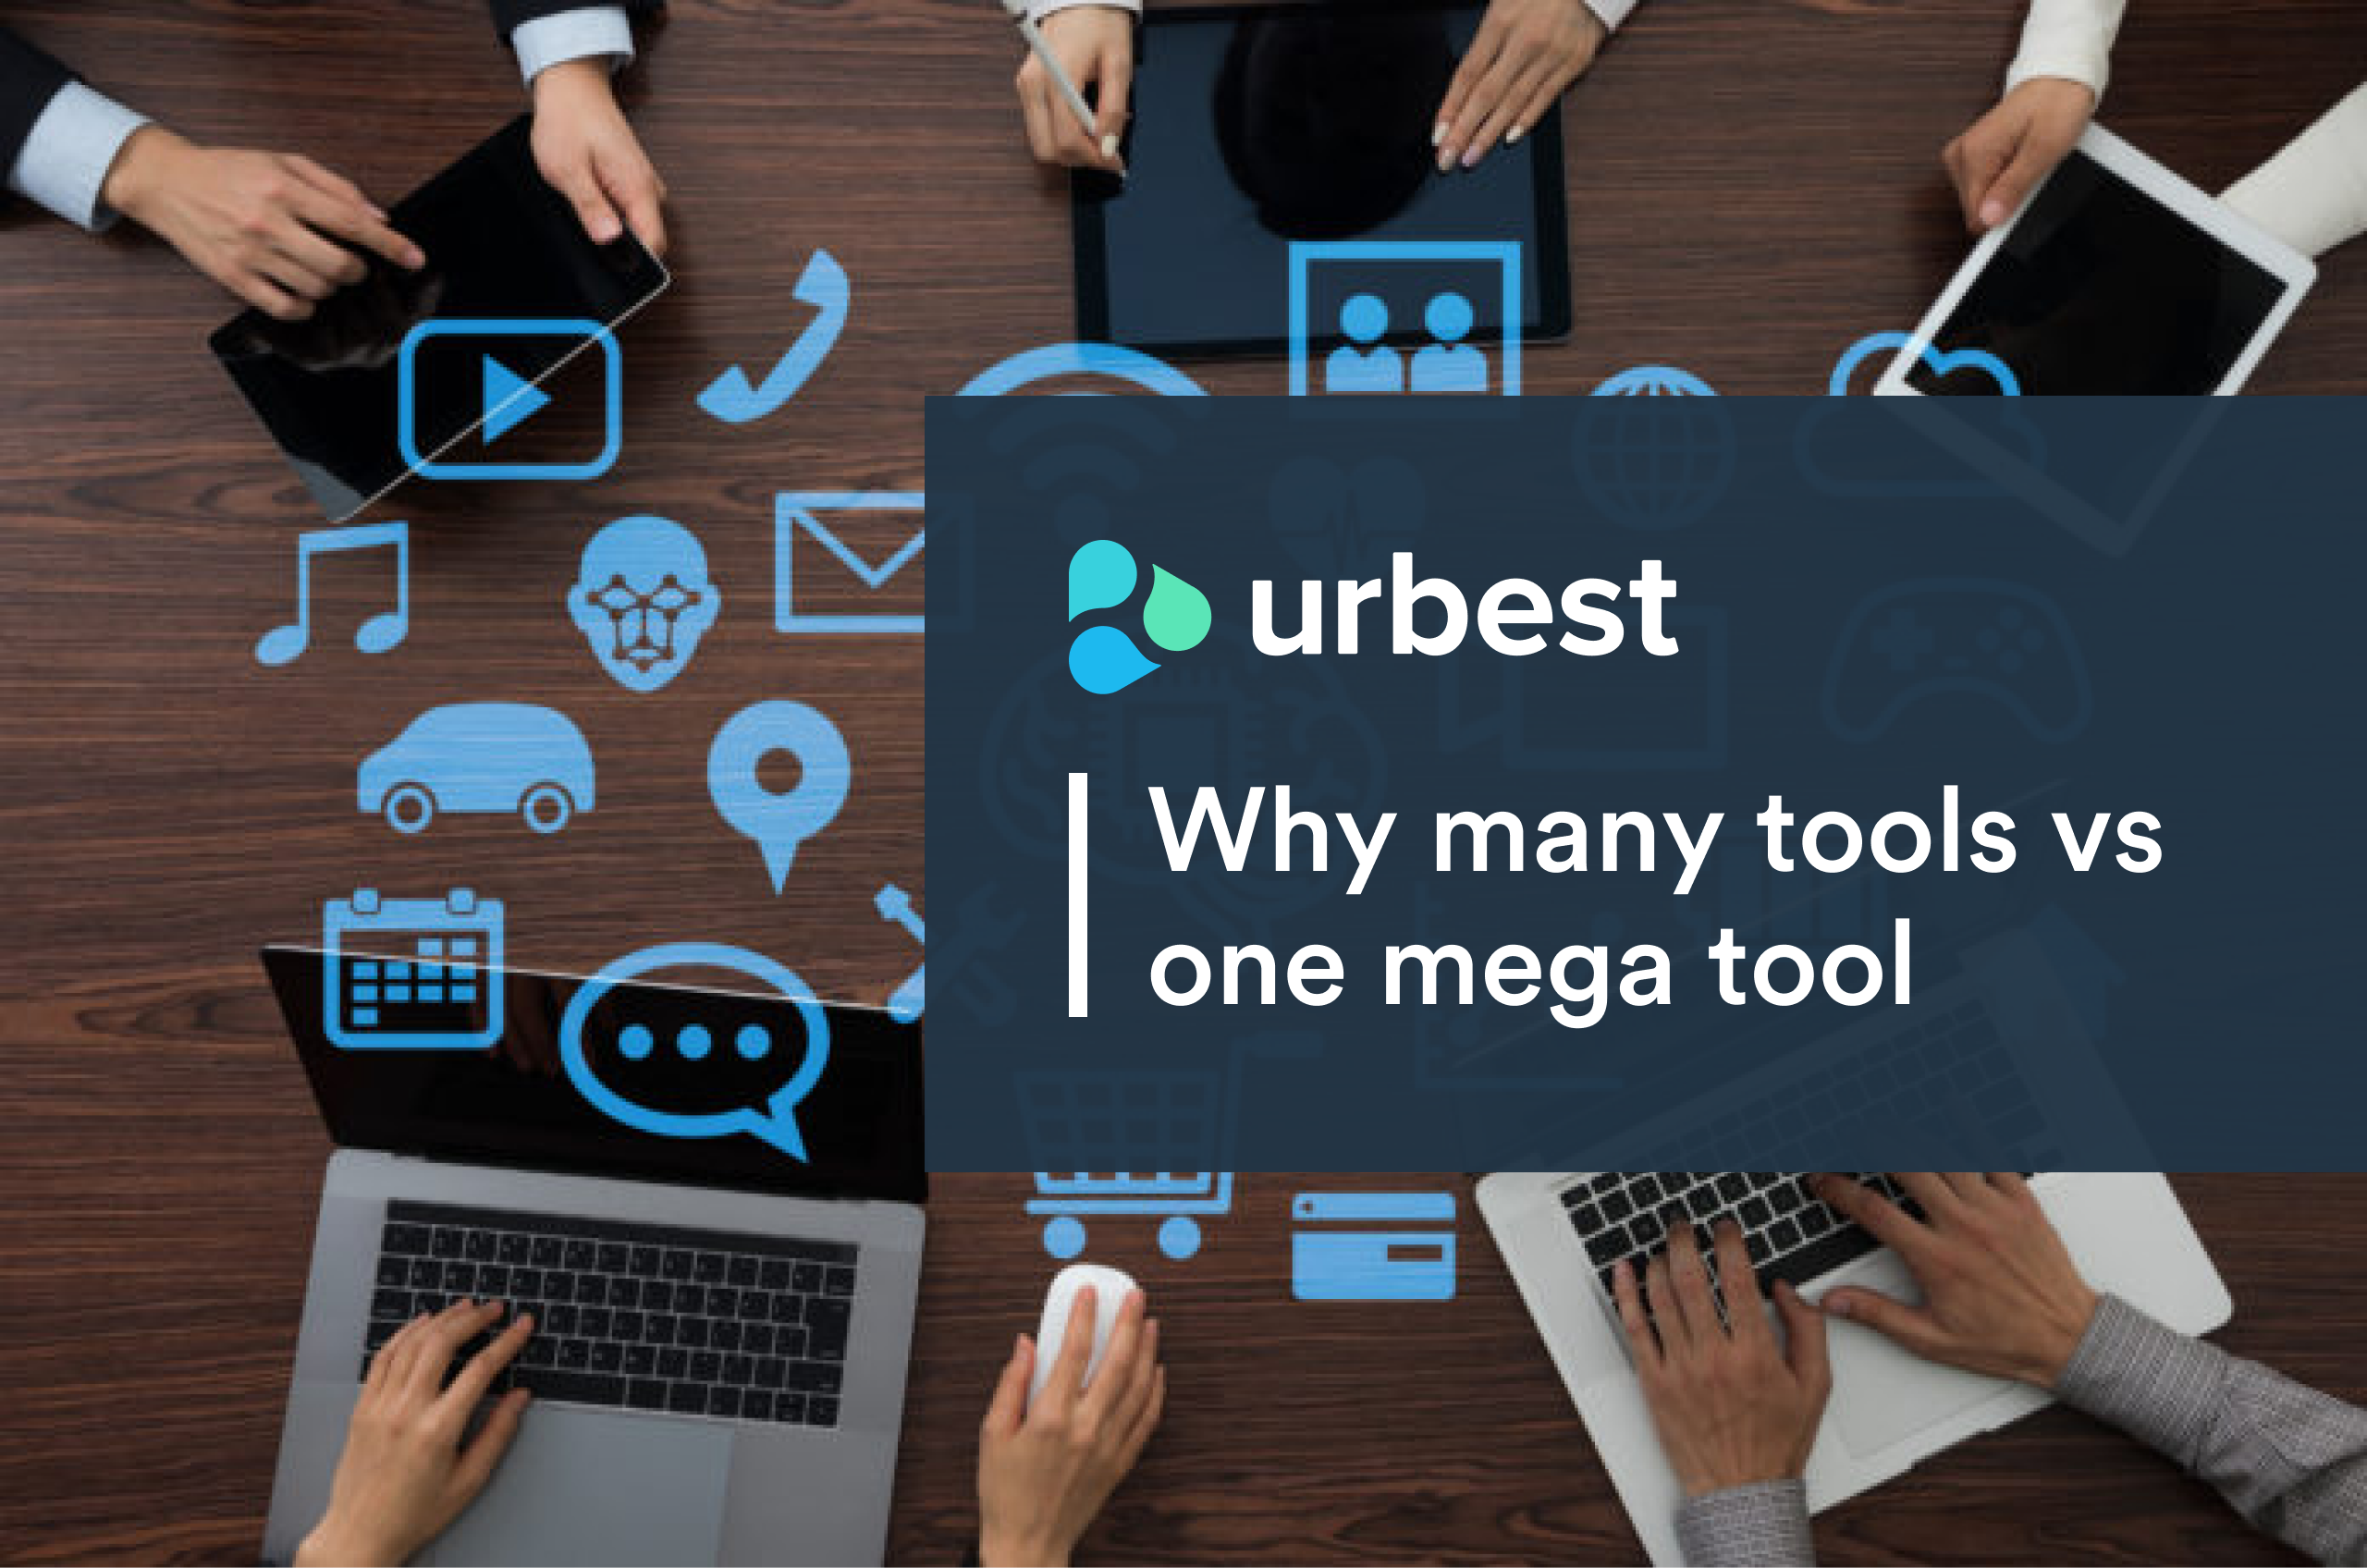 Why many tools vs one mega tool